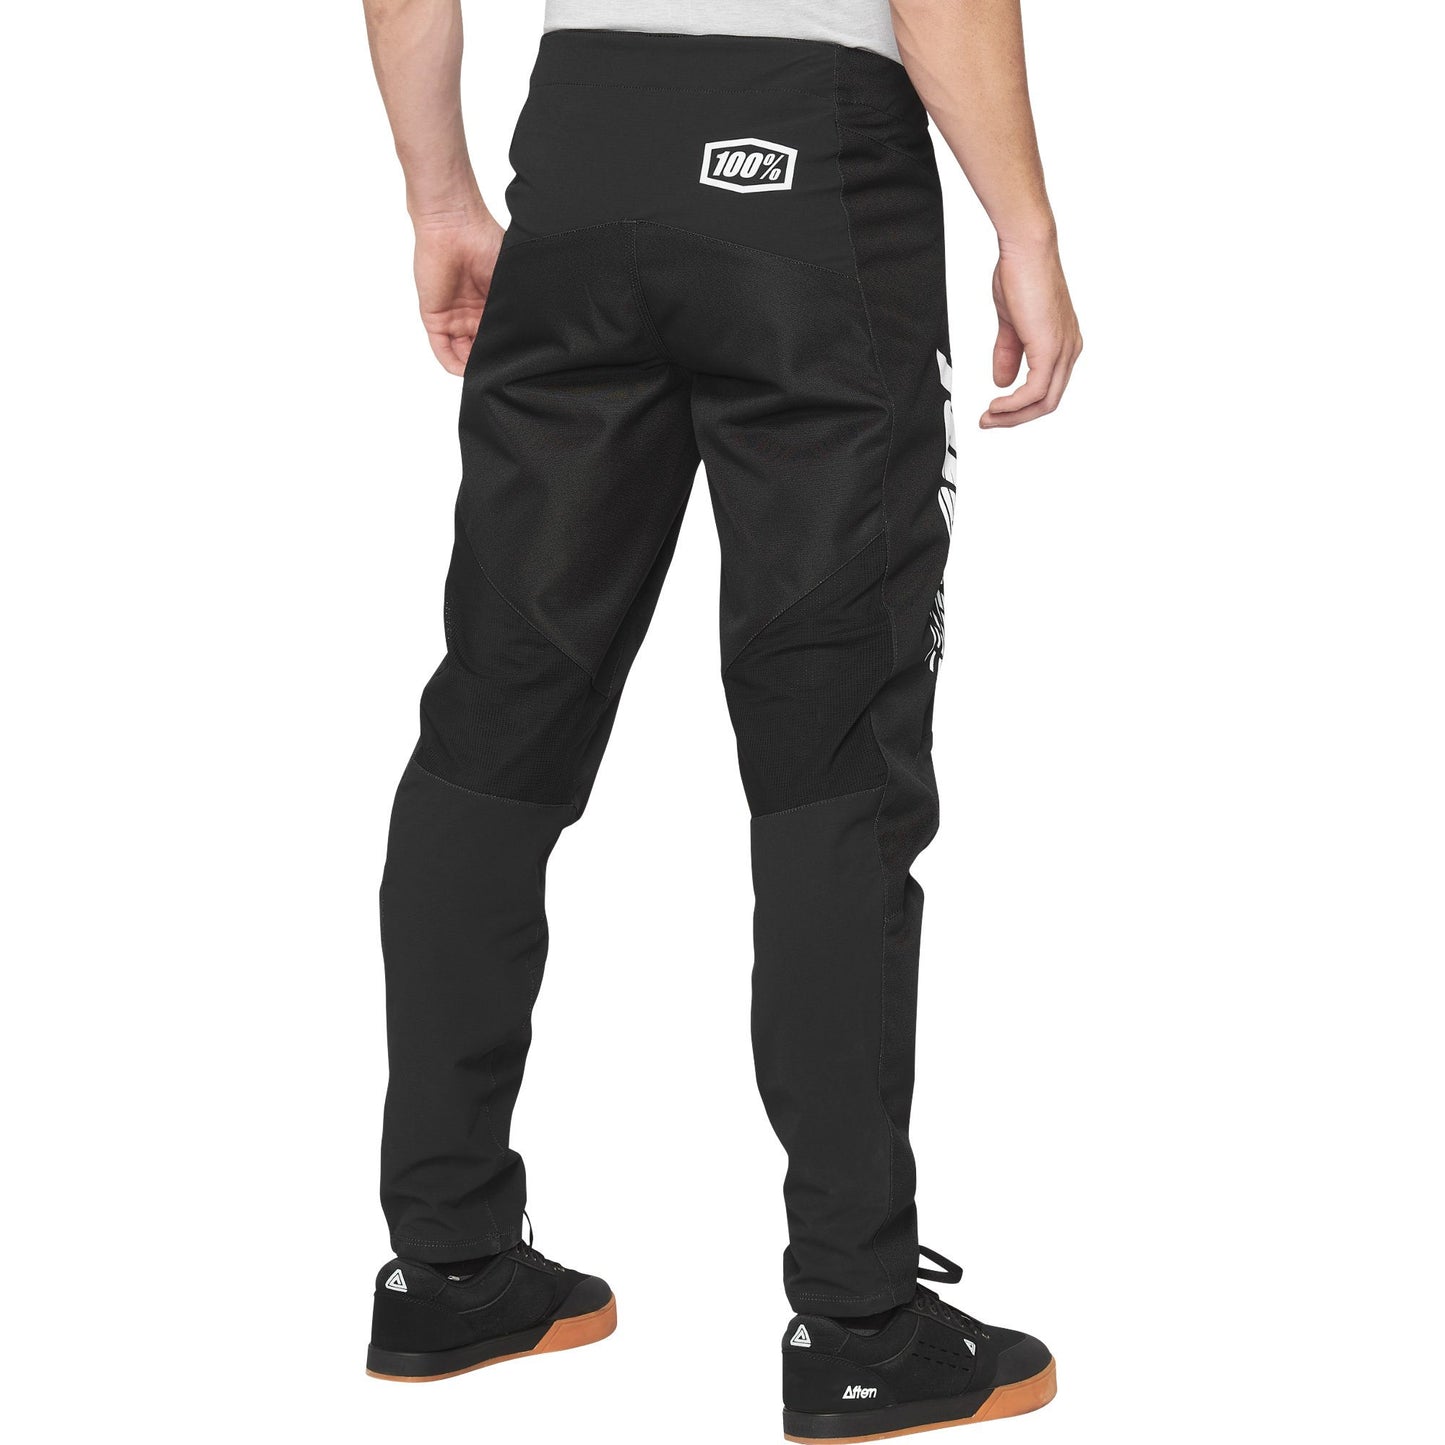 Pants 100% R-Core DH/BMX